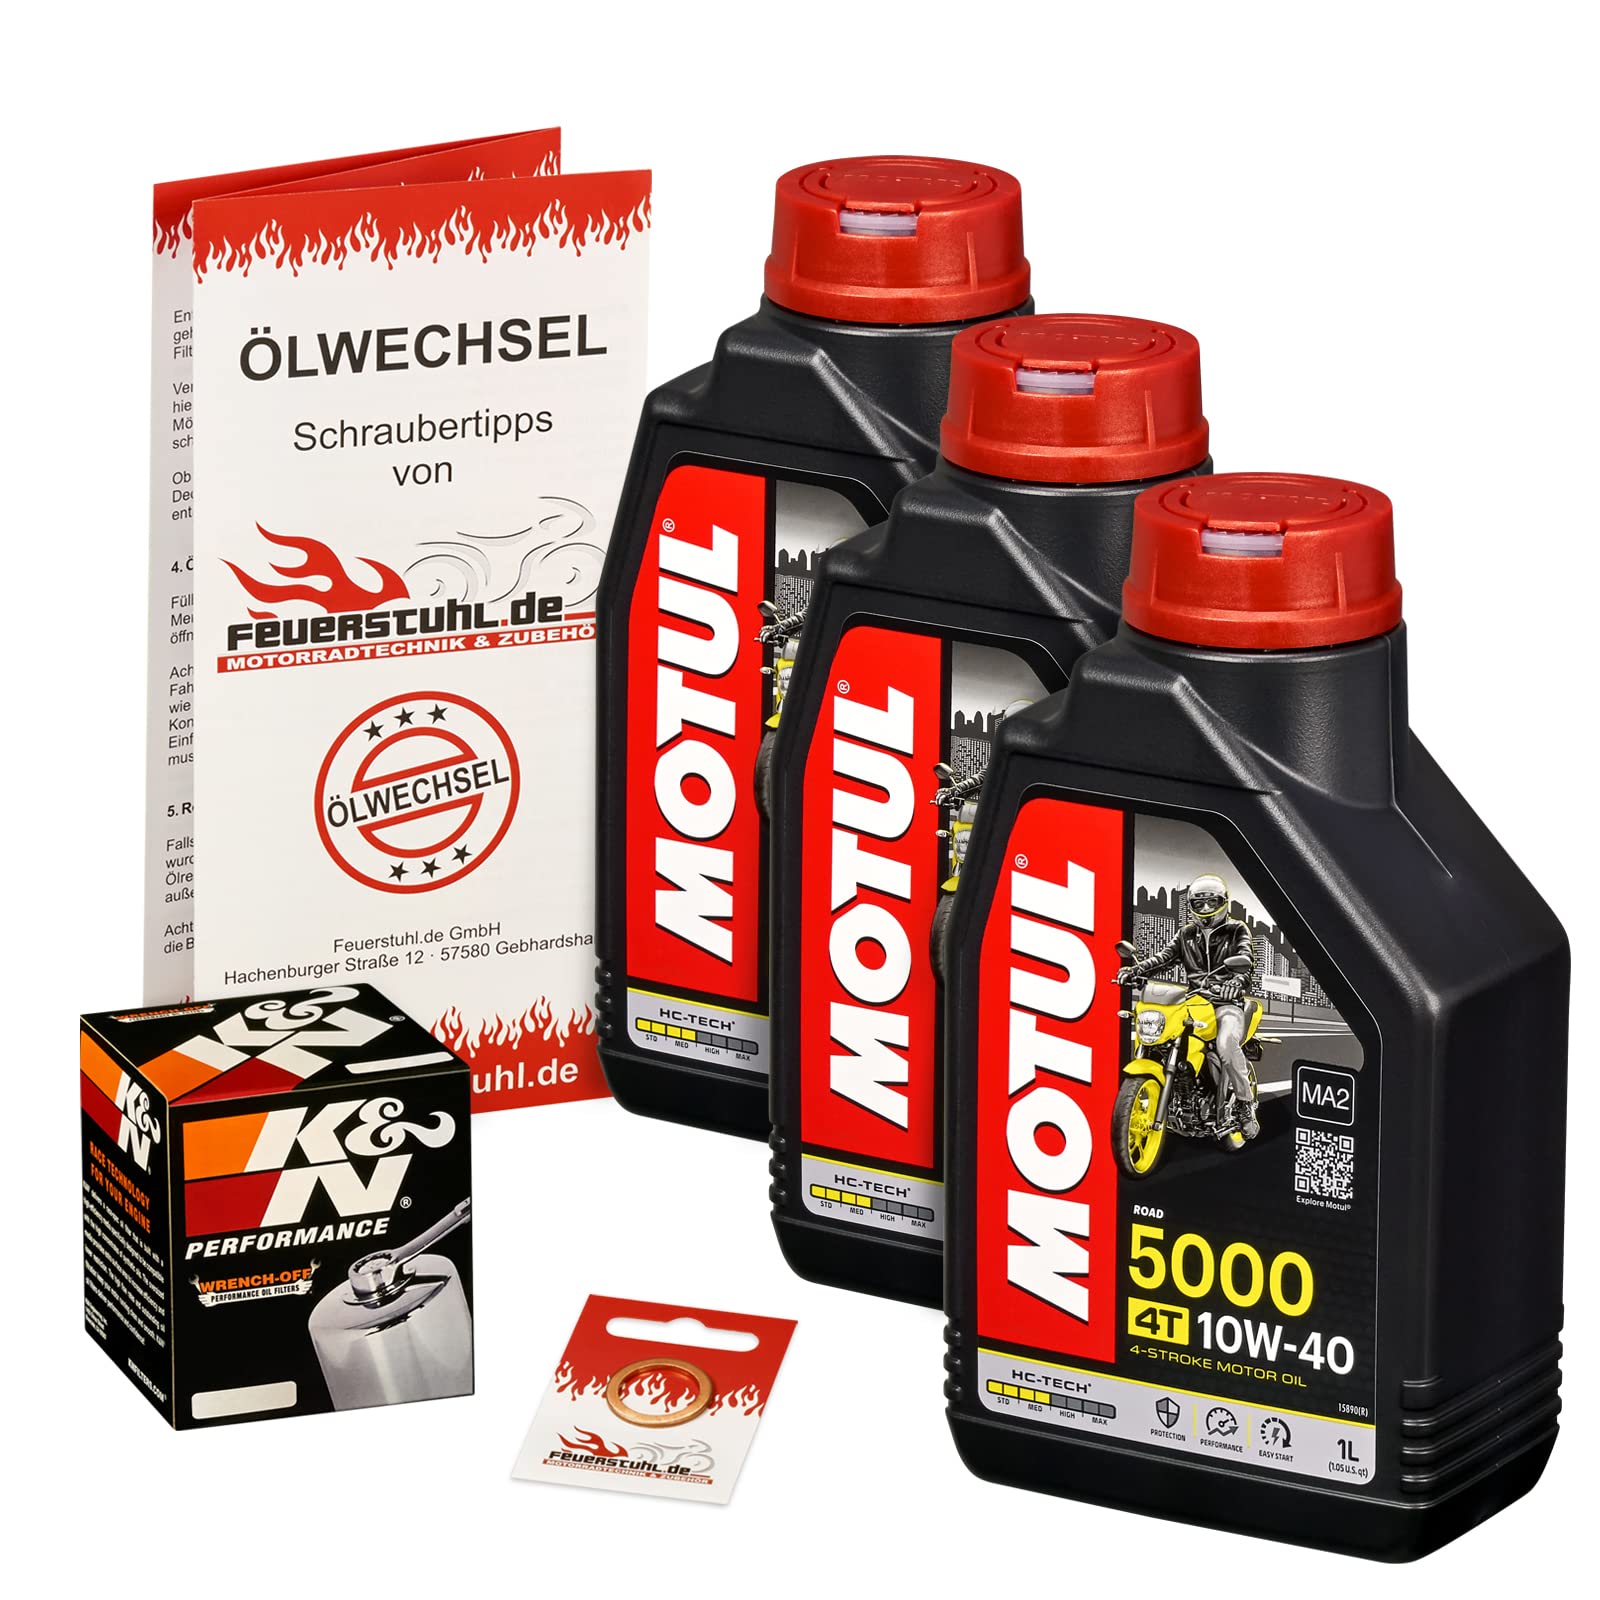 Motul 10W-40 Öl + K&N Ölfilter für Suzuki VS 750 Intruder, 87-91, VR51B - Ölwechselset inkl. Motoröl, Chrom Filter, Dichtring von Feuerstuhl.de GmbH